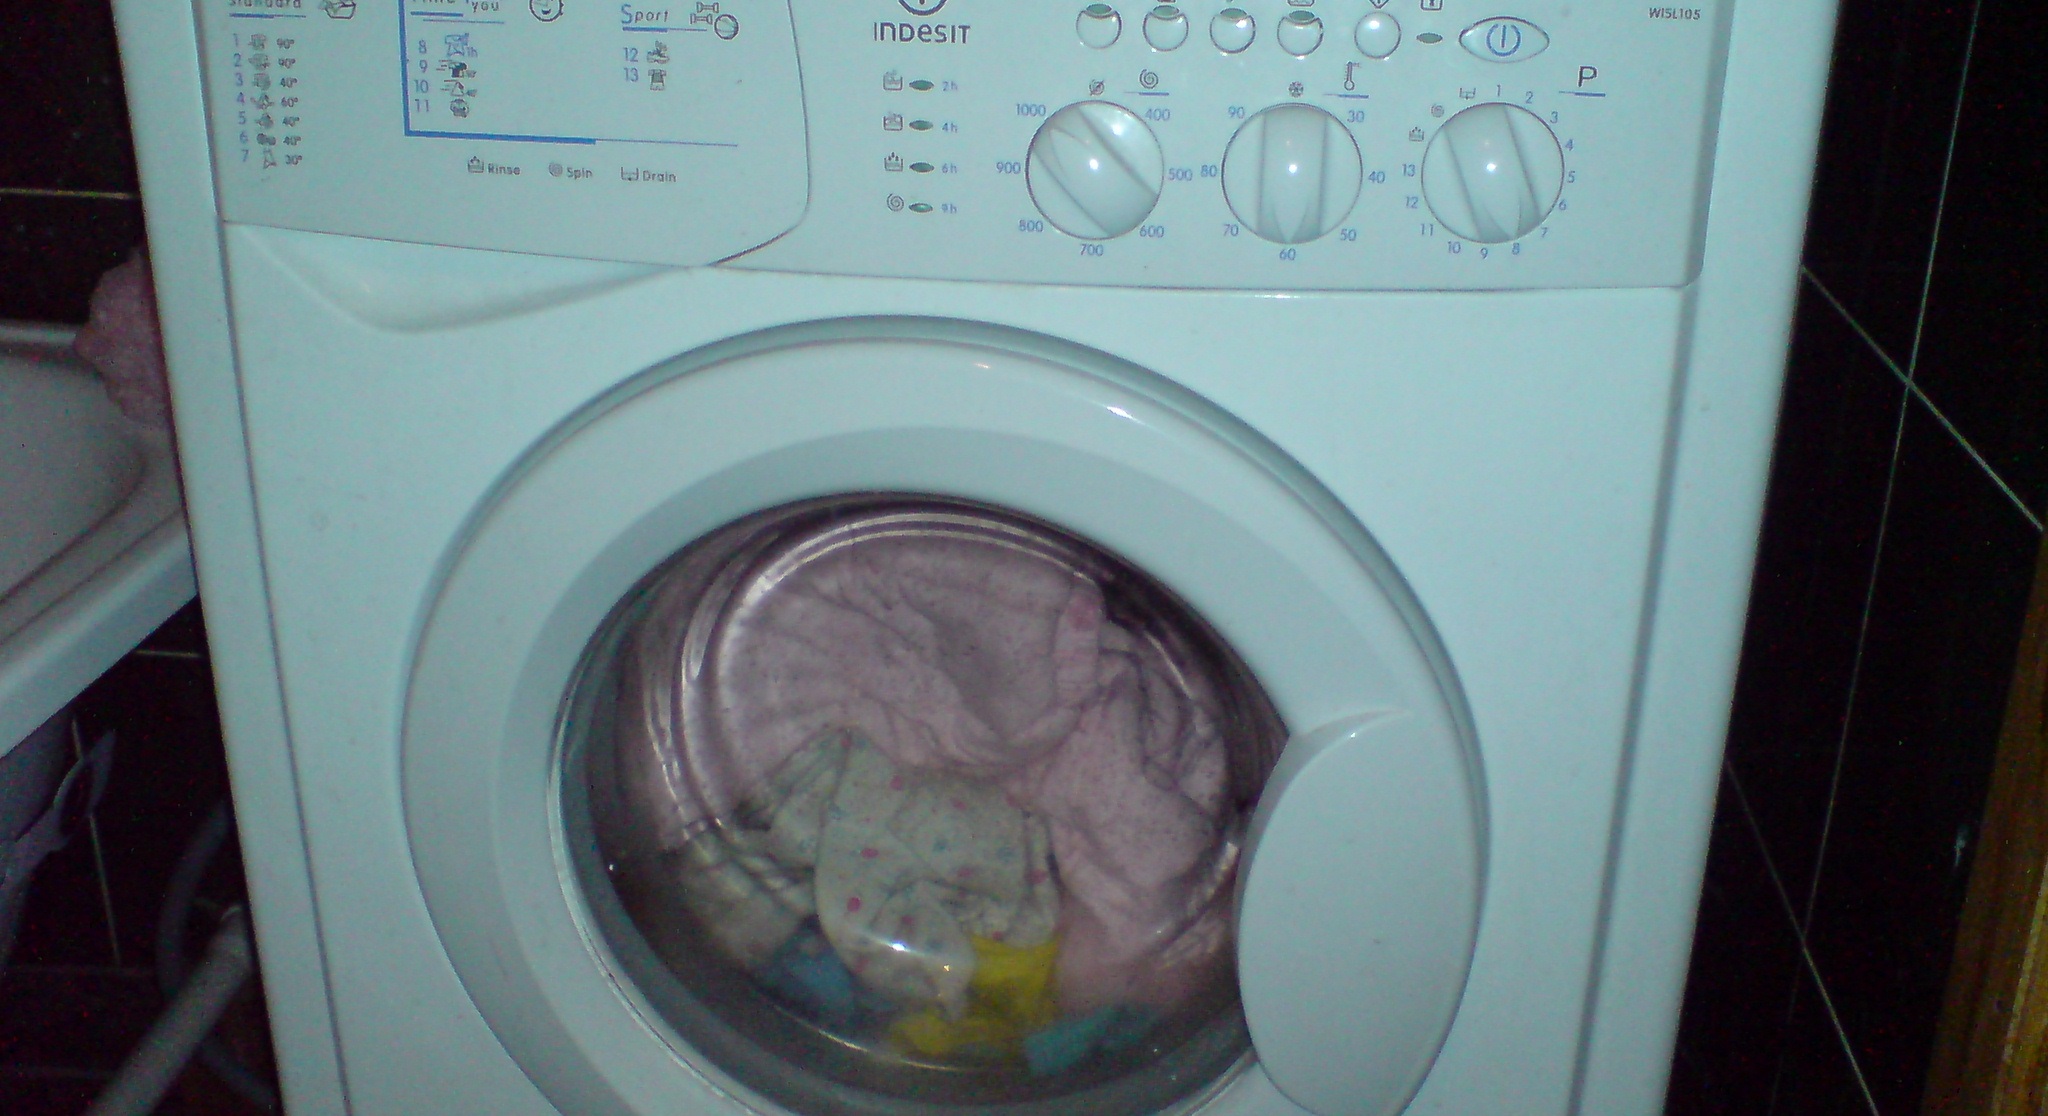 v pračce je příliš mnoho prádla